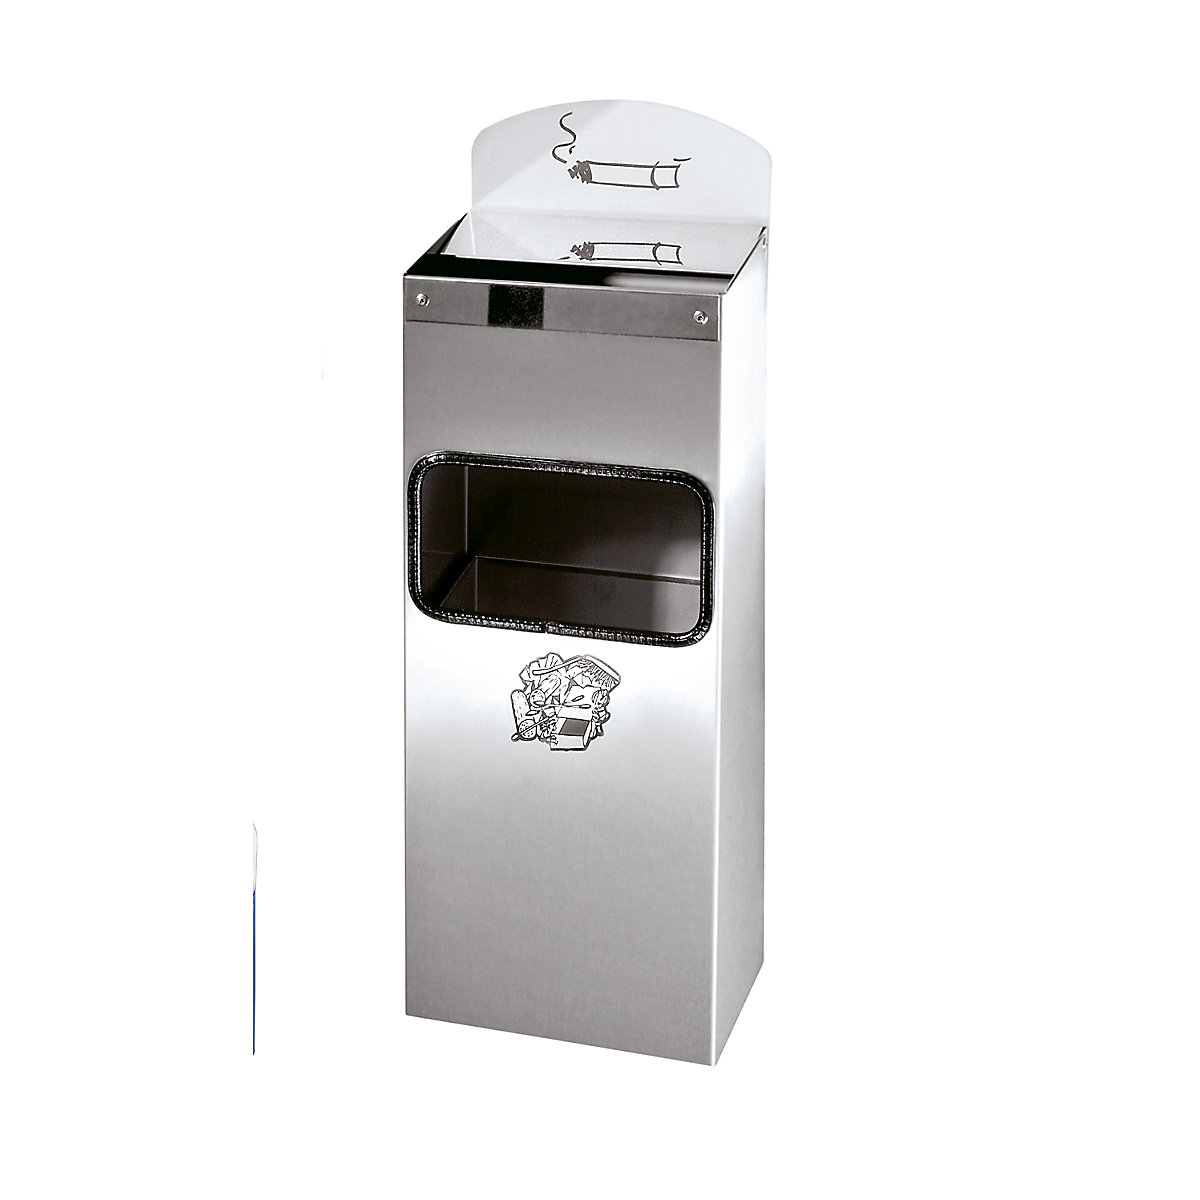 VAR – Kombinovaný nástěnný popelník s vhazovacím otvorem pro odpadky, v x š x h 505 x 200 x 125 mm, ušlechtilá ocel, nerezová